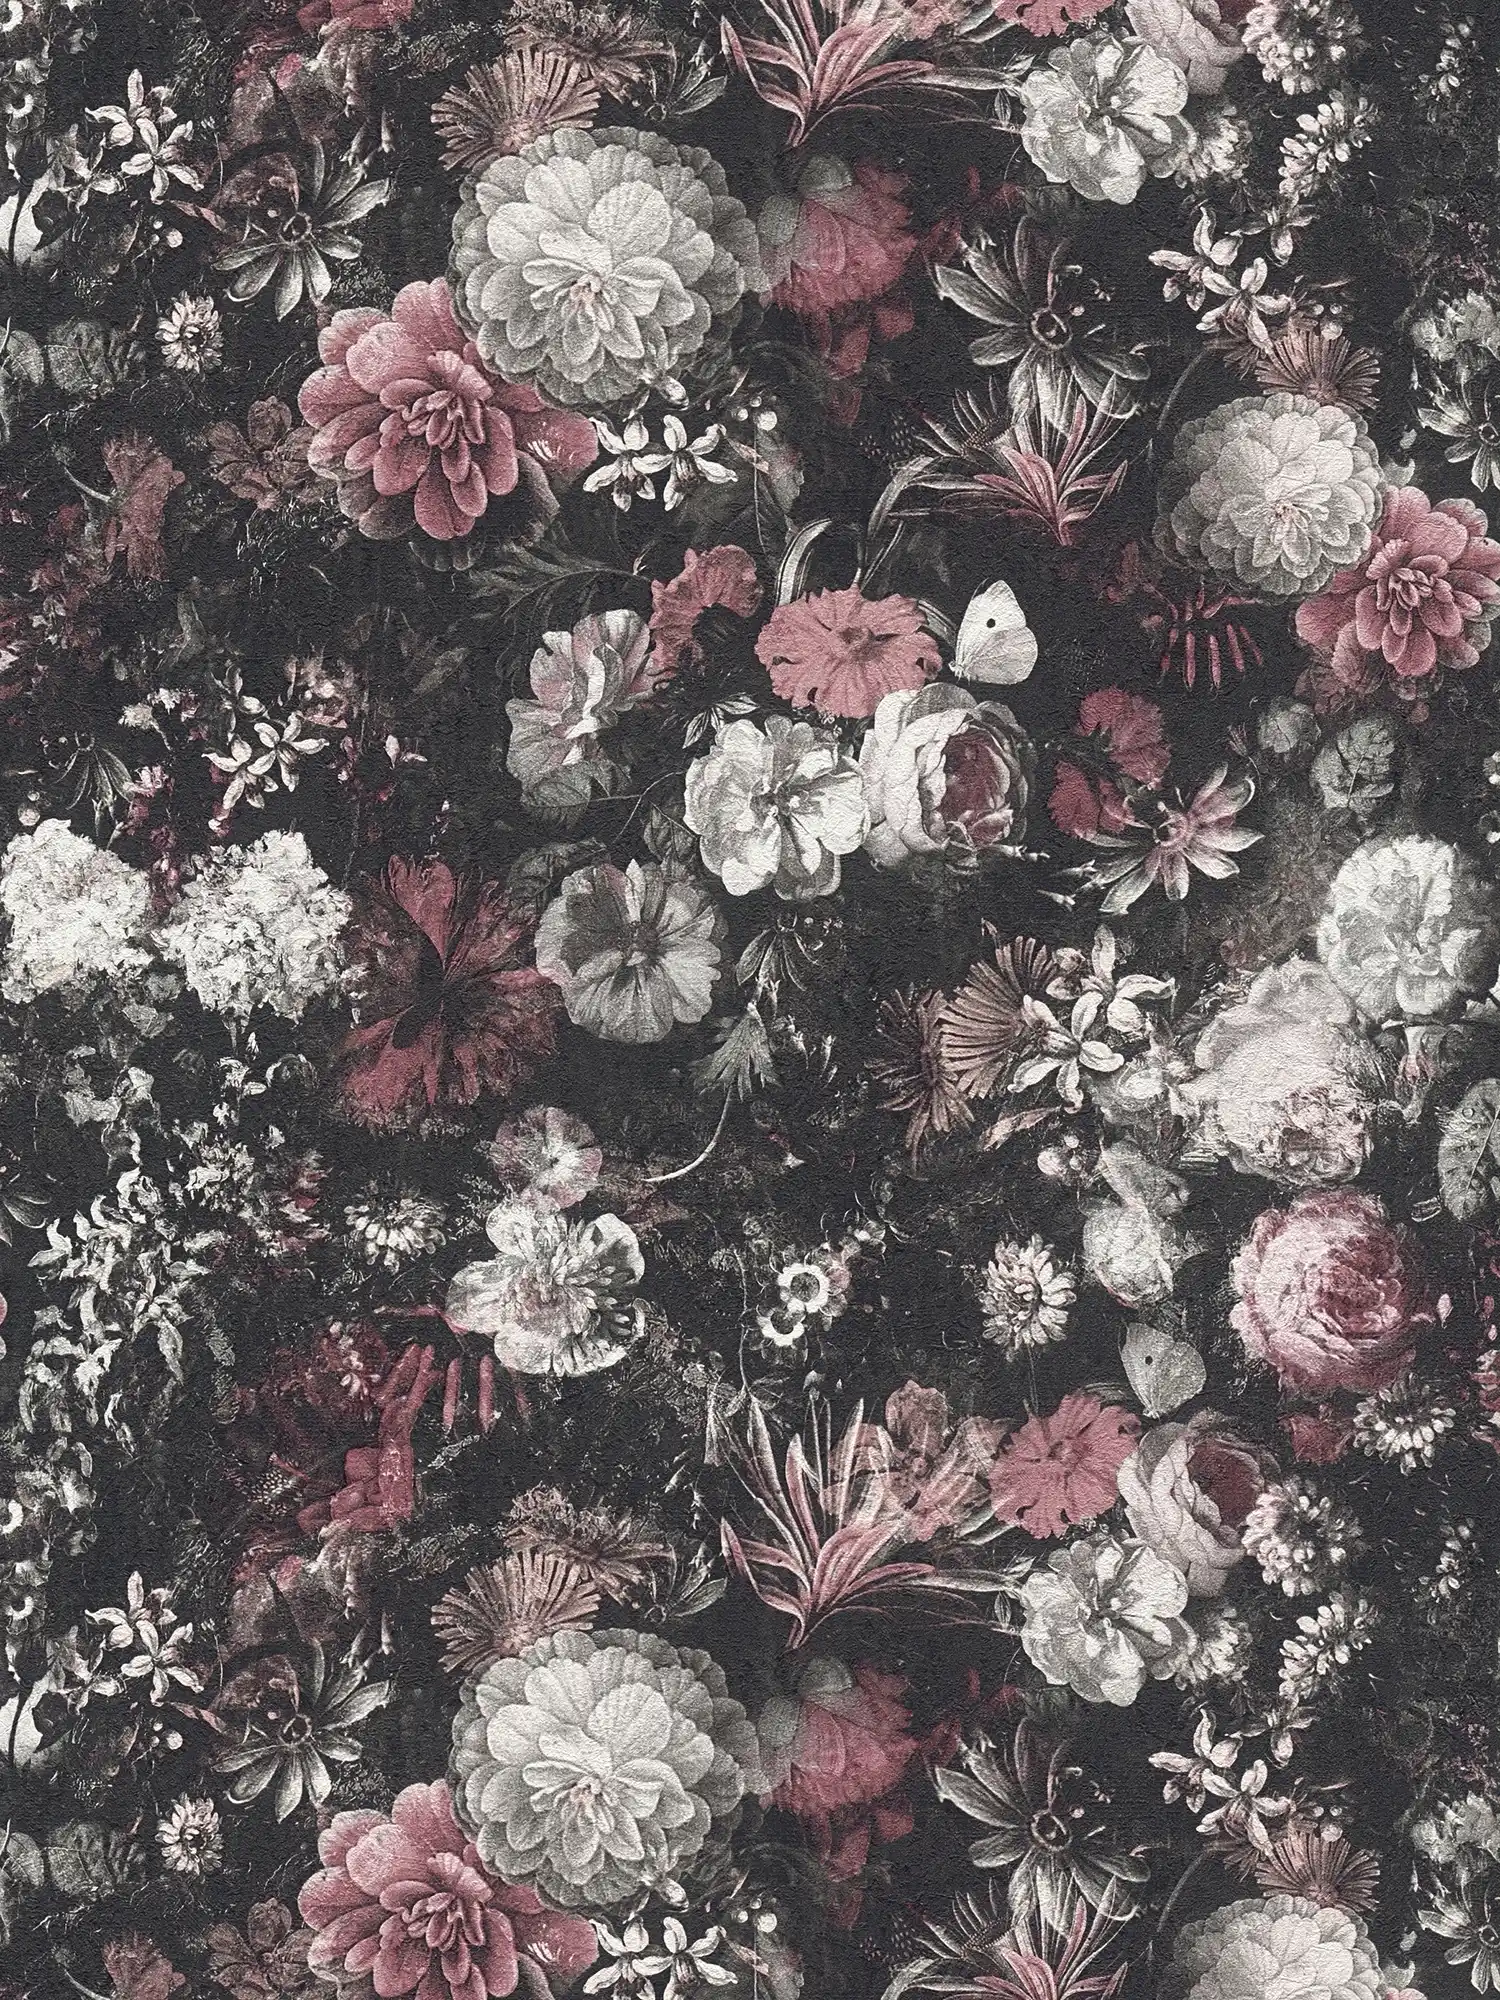         Blumentapete Rosen & Blüten im Vintage Stil – Rot, Schwarz, Weiß
    